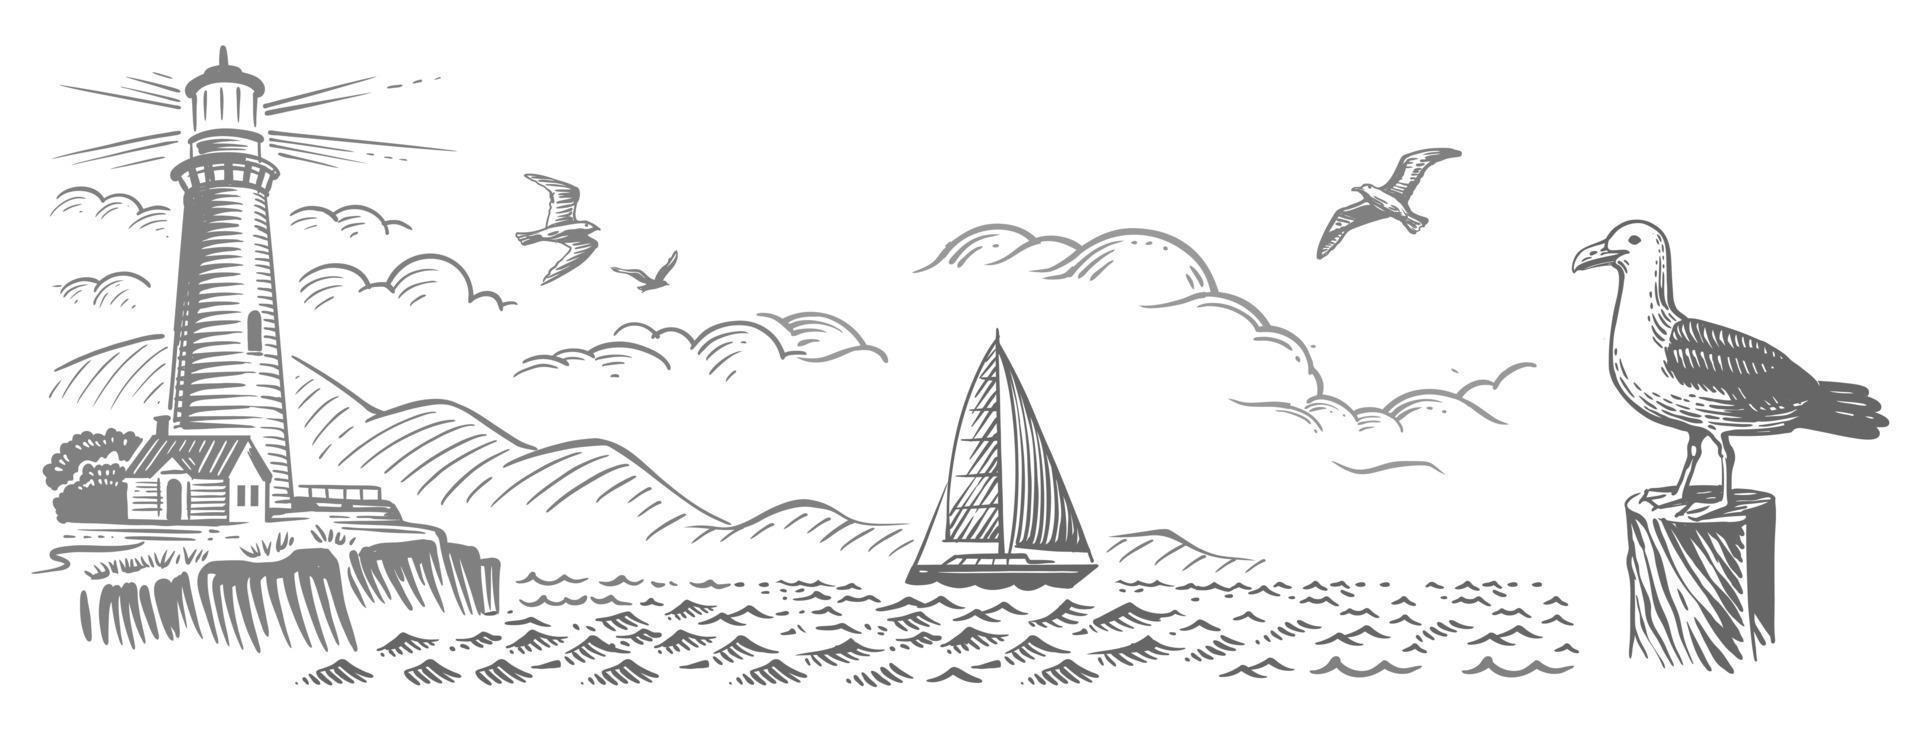 landskap, hav, segelbåt, fyr. hand dragen vektor illustration